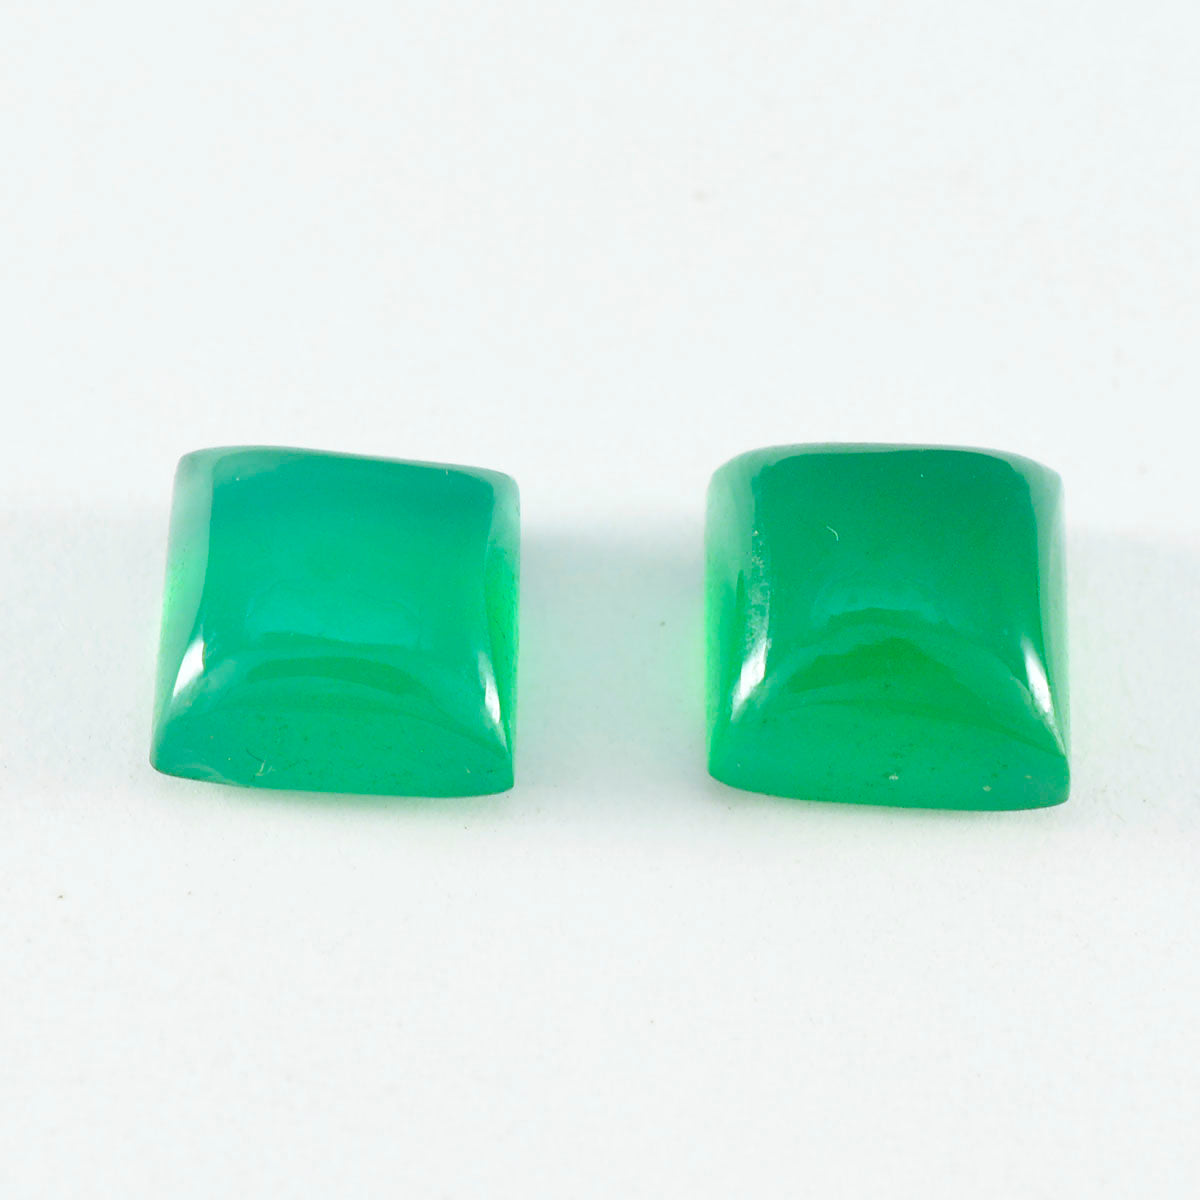 Riyogems 1PC Green Onyx Cabochon 10x10 mm Square Shape pretty Quality Gems